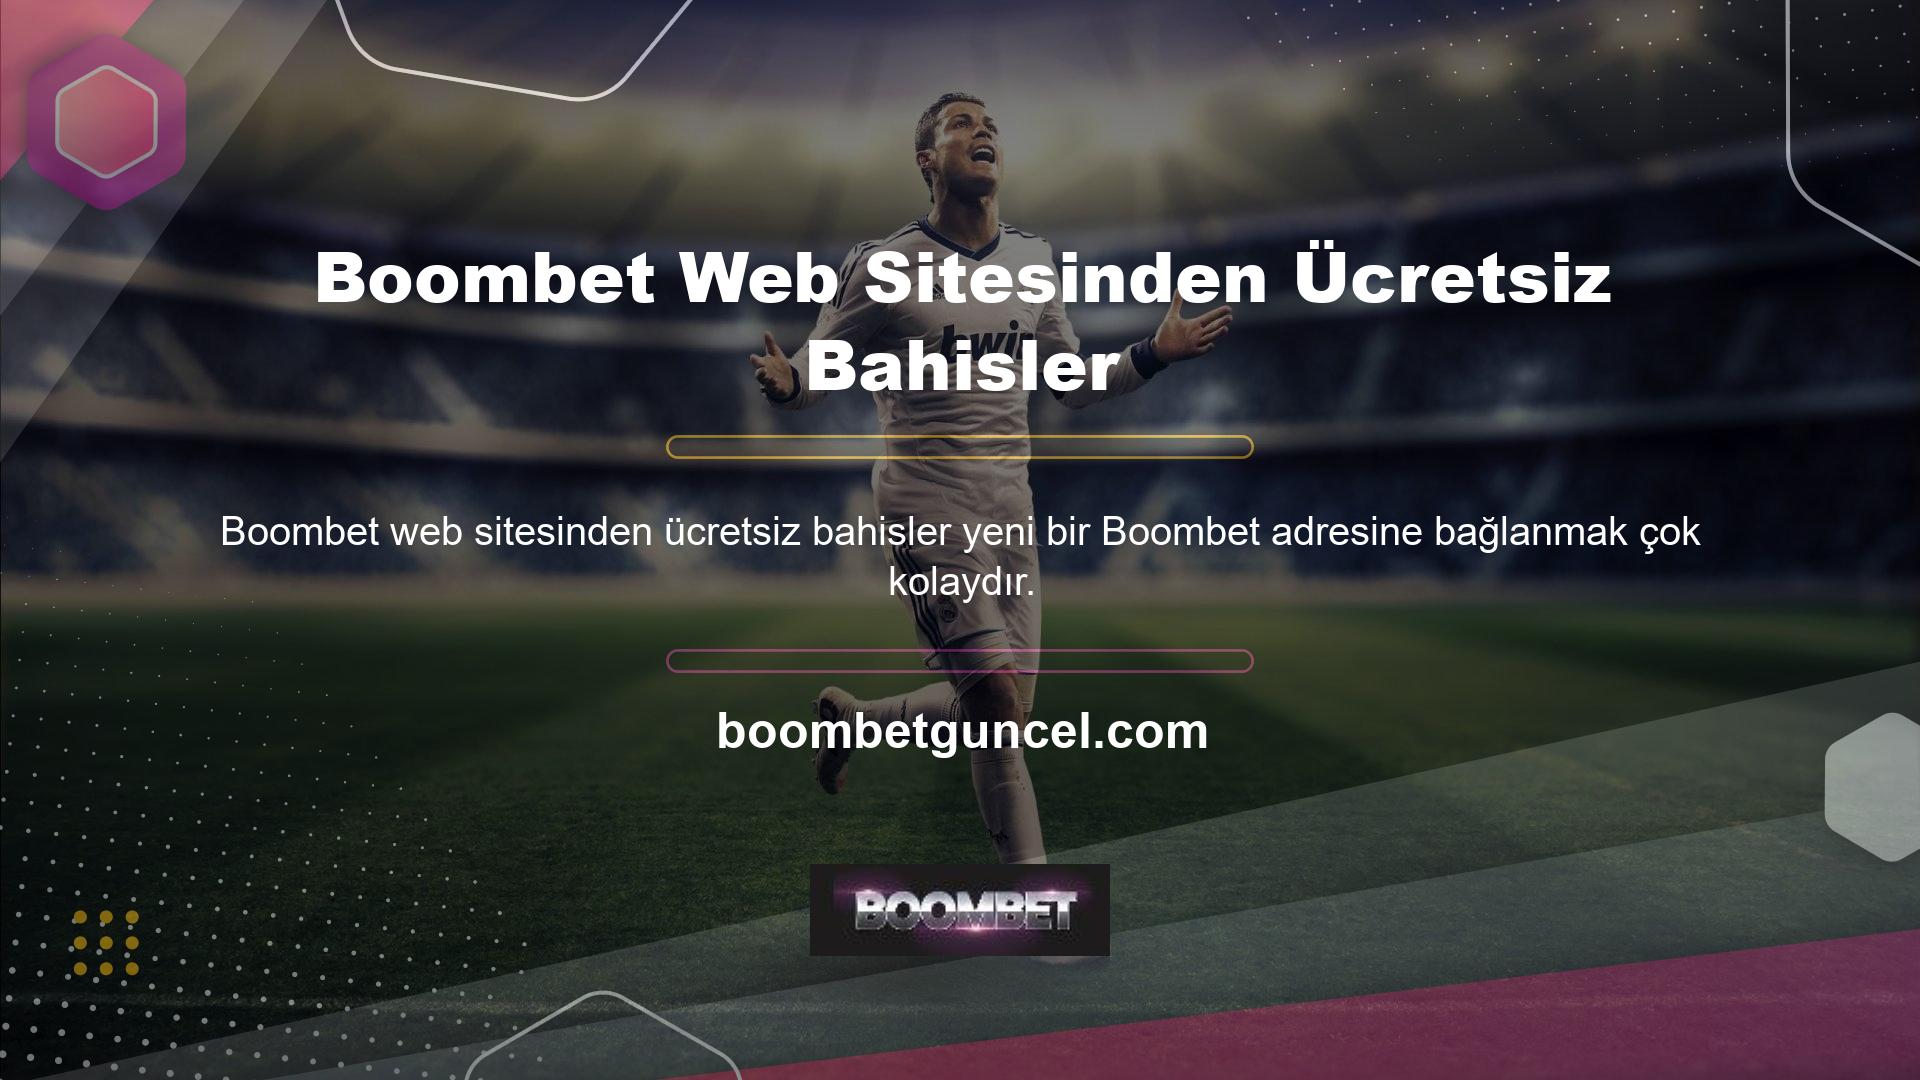 Boombet web sitesi ücretsiz bahisler kurumsal hizmet anlayışıyla en iyi hizmeti sunmaktadır